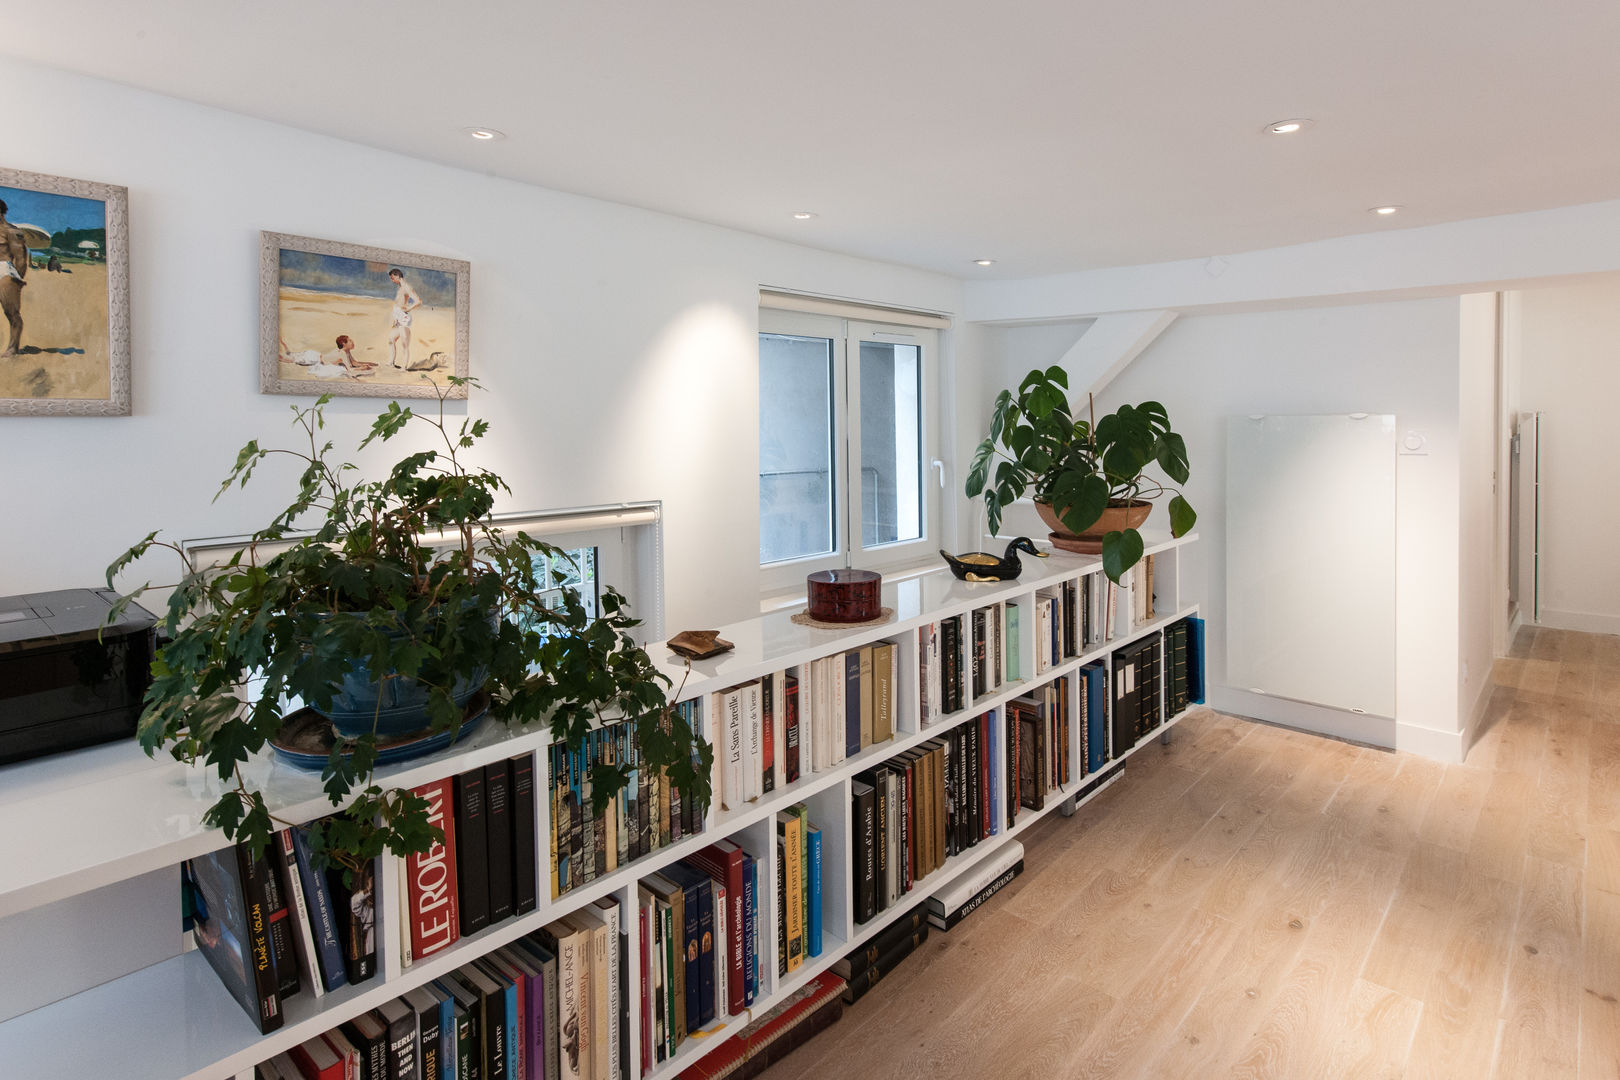 Un loft plus lumineux, Fables de murs Fables de murs Modern Study Room and Home Office